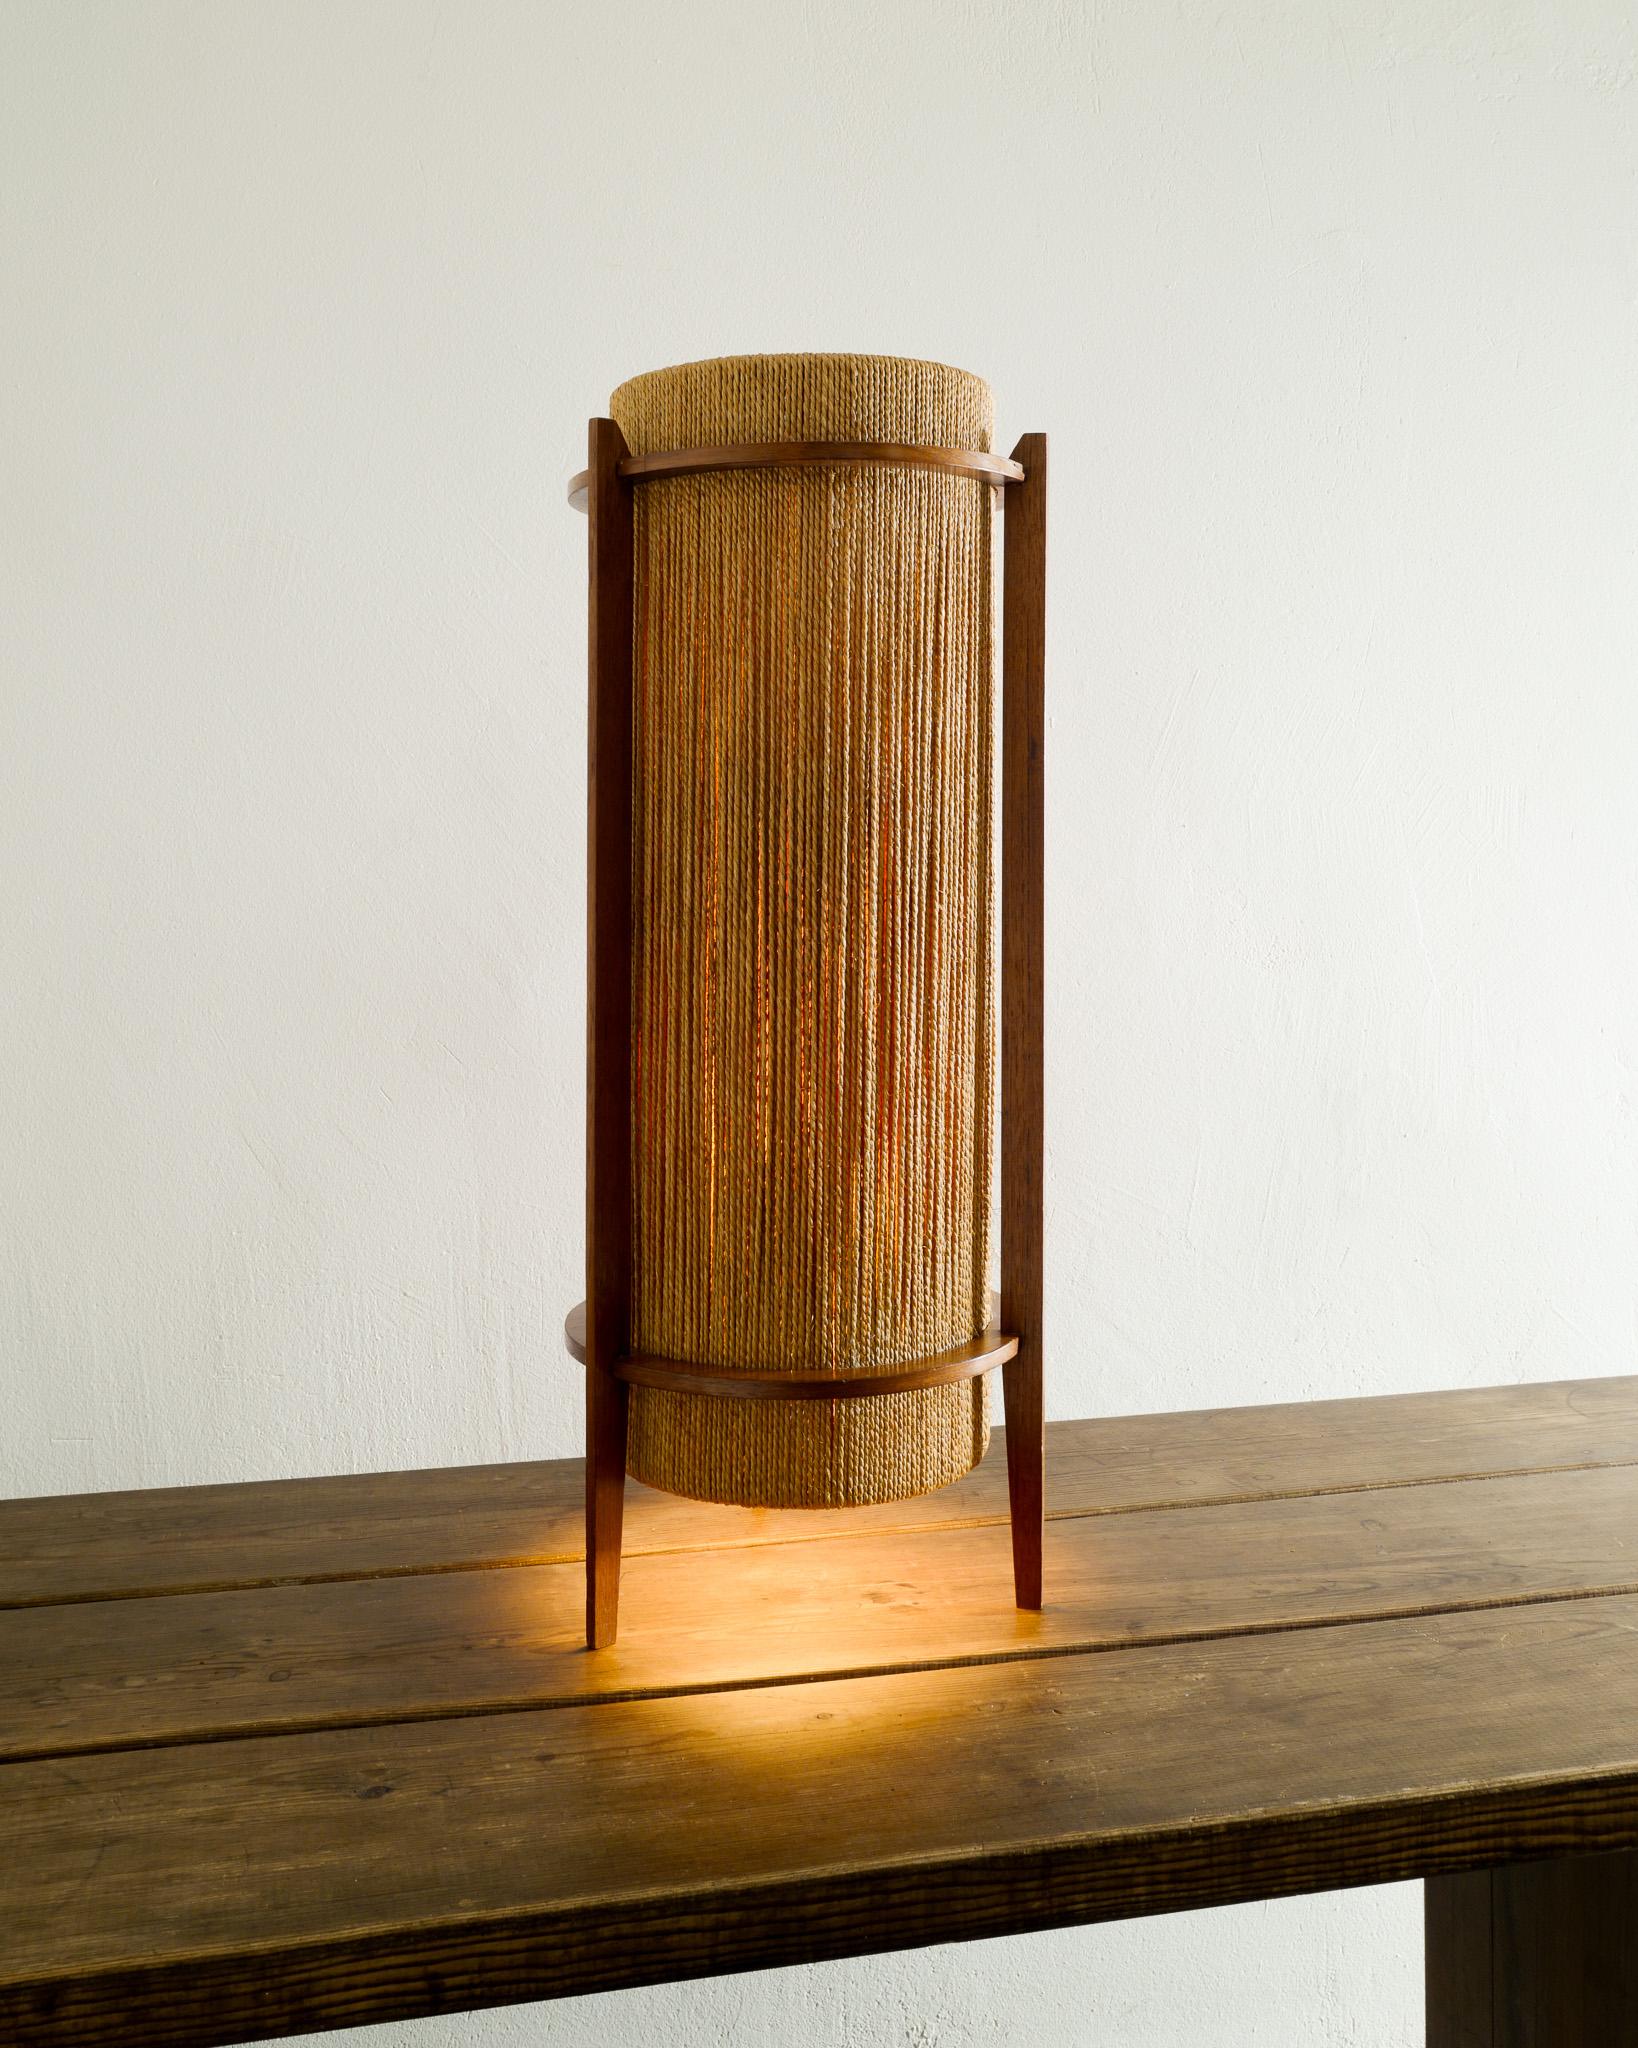 Rare lampadaire / lampe de table cylindrique danois du milieu du siècle en bois de teck et cordes de chanvre par Ib Fabiansen produit par Fog & Mørop Danemark, années 1950. En bon état d'origine. 

Dimensions : H : 75 cm / 29.5